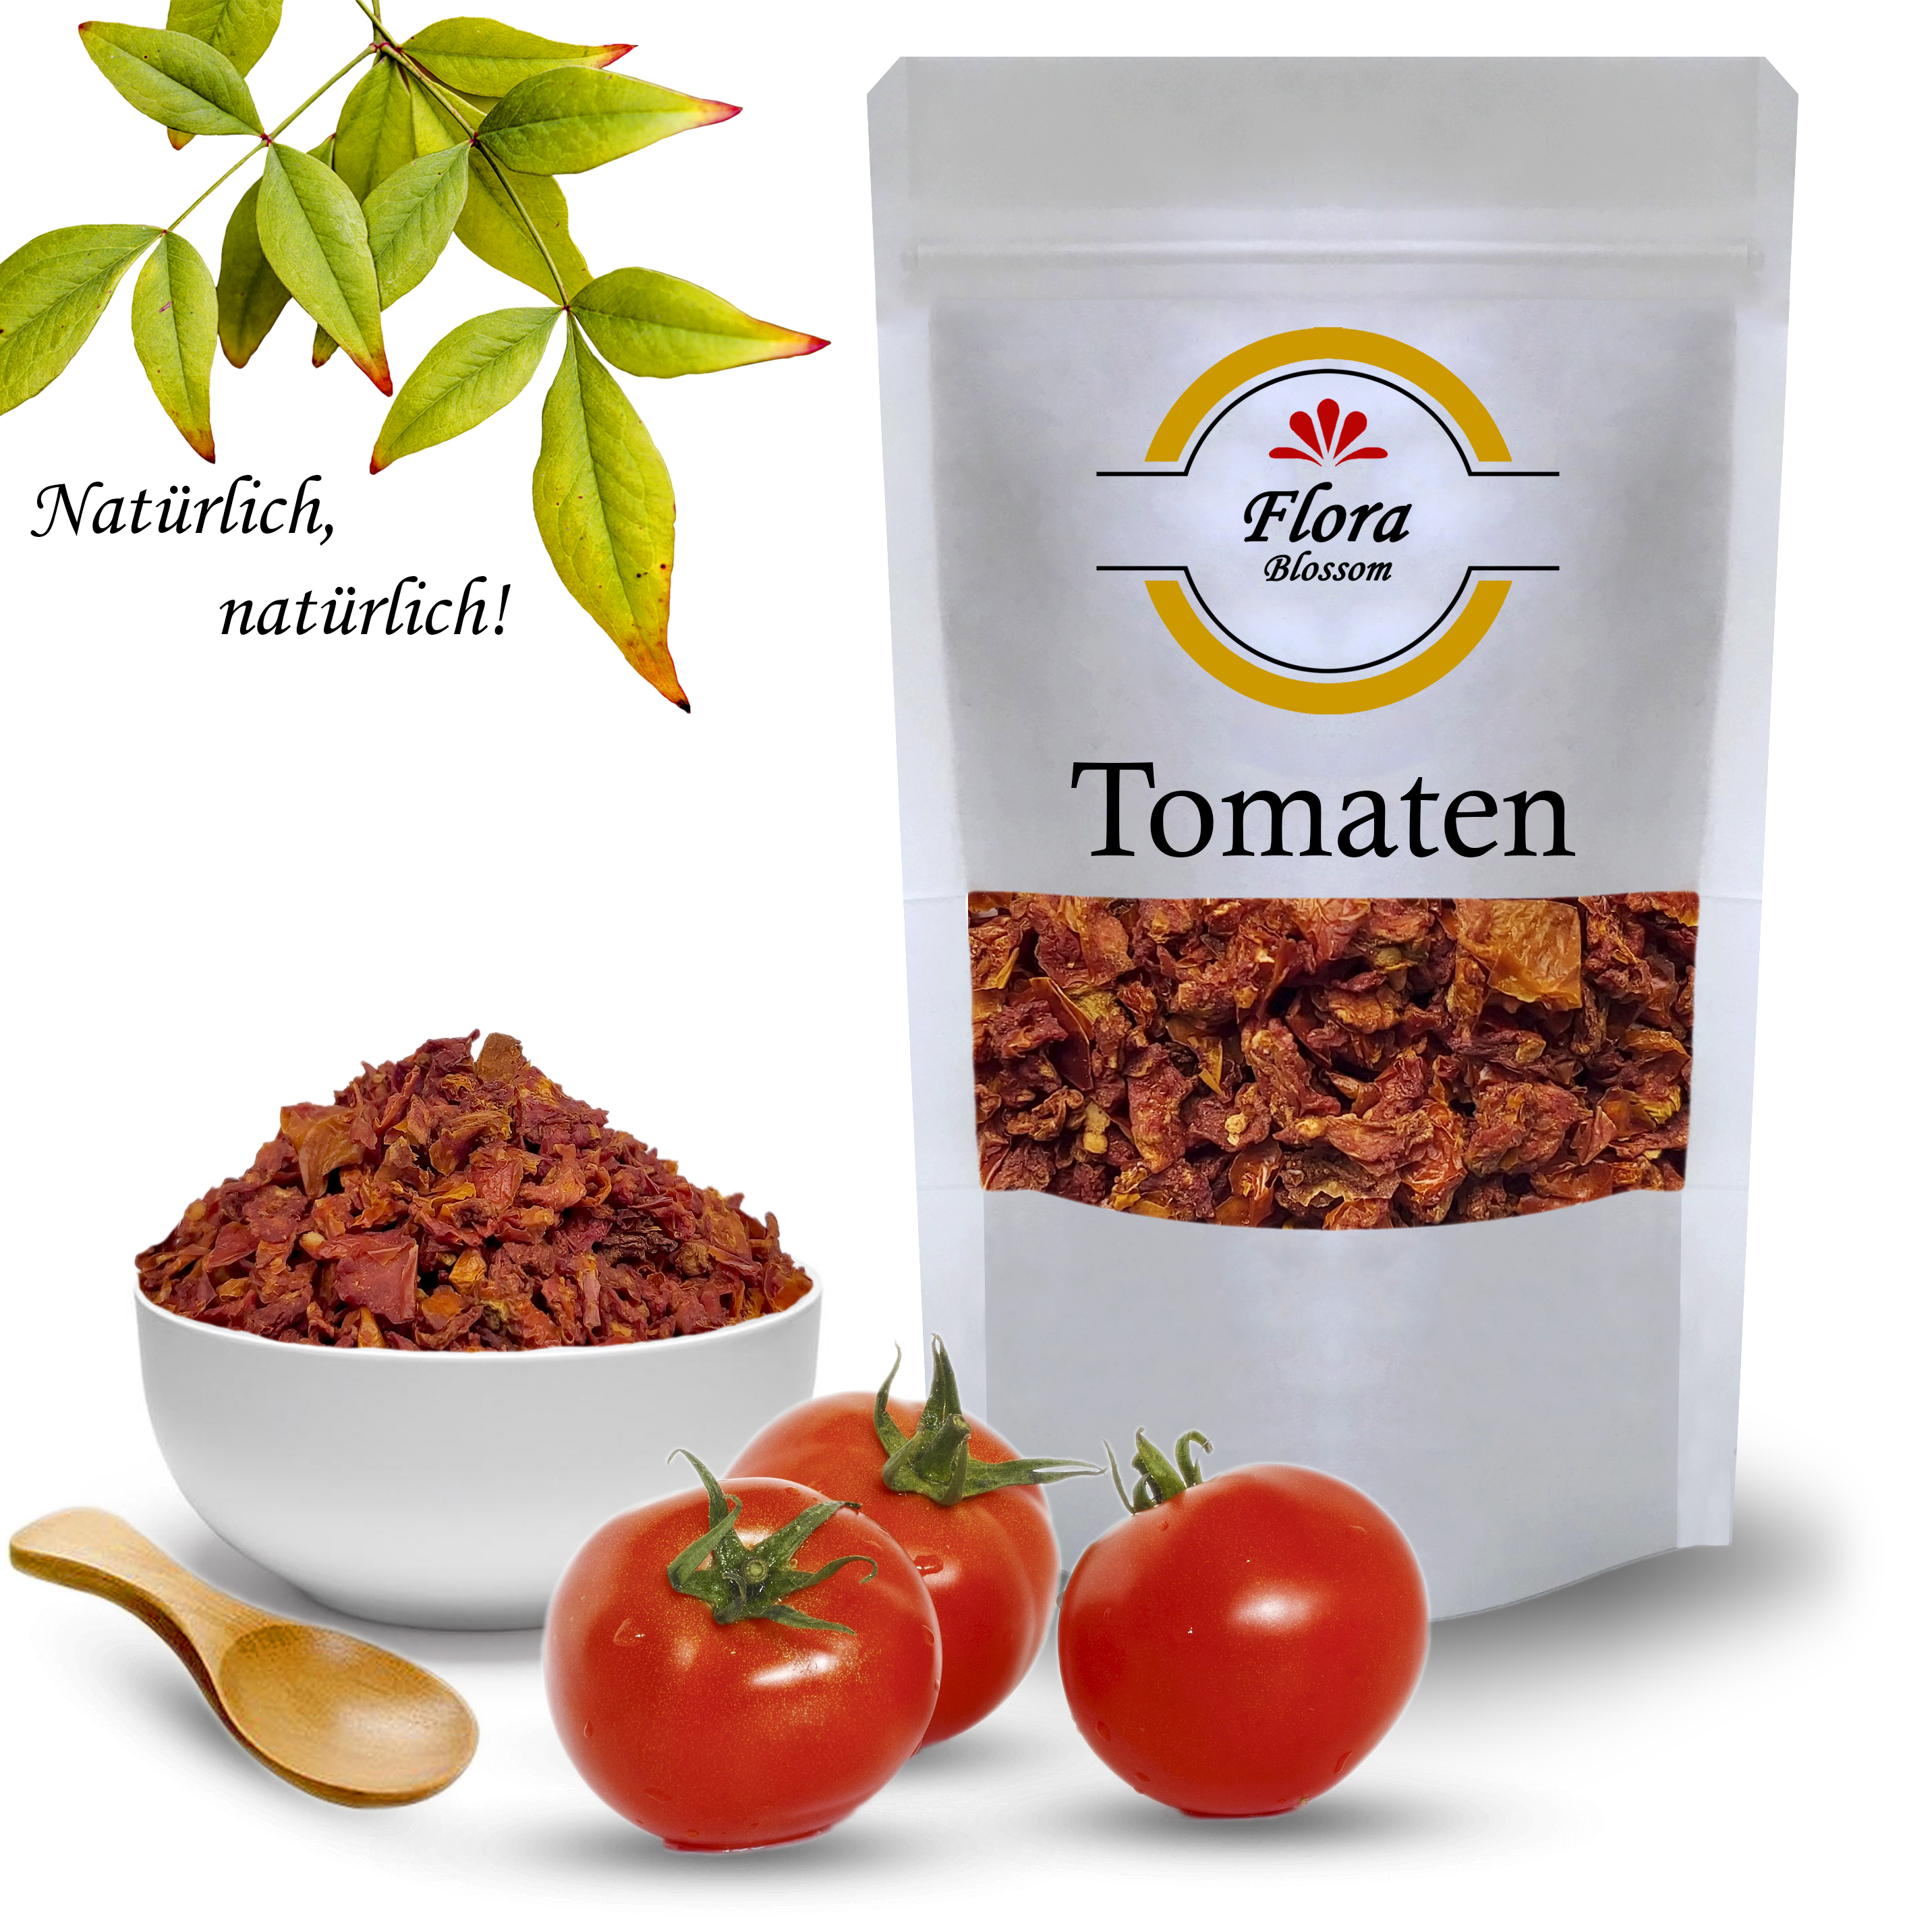 Tomatenflocken Online Kaufen auf www.shop-flora.com Gewürze, Kräuter Safran und mehr!